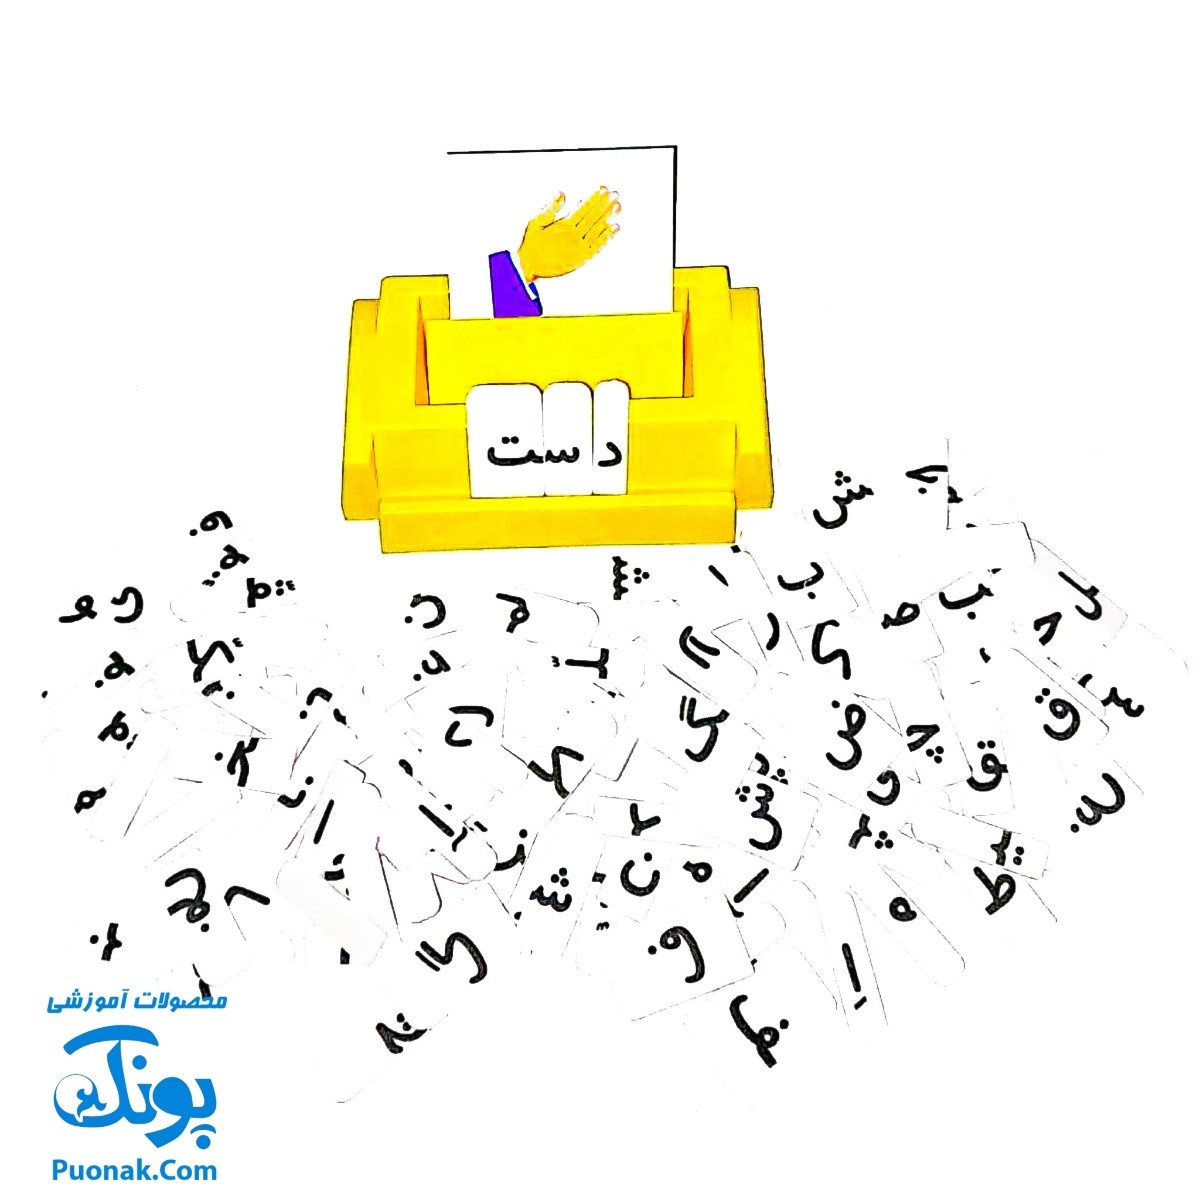 آموزش الفبای فارسی بازیتا (الفبای فومی به همراه کارت تصاویر و صفحه جایگذاری) آموزش بخوانیم و بنویسیم فارسی اول دبستان در قالب یک بازی جذاب و آموزشی